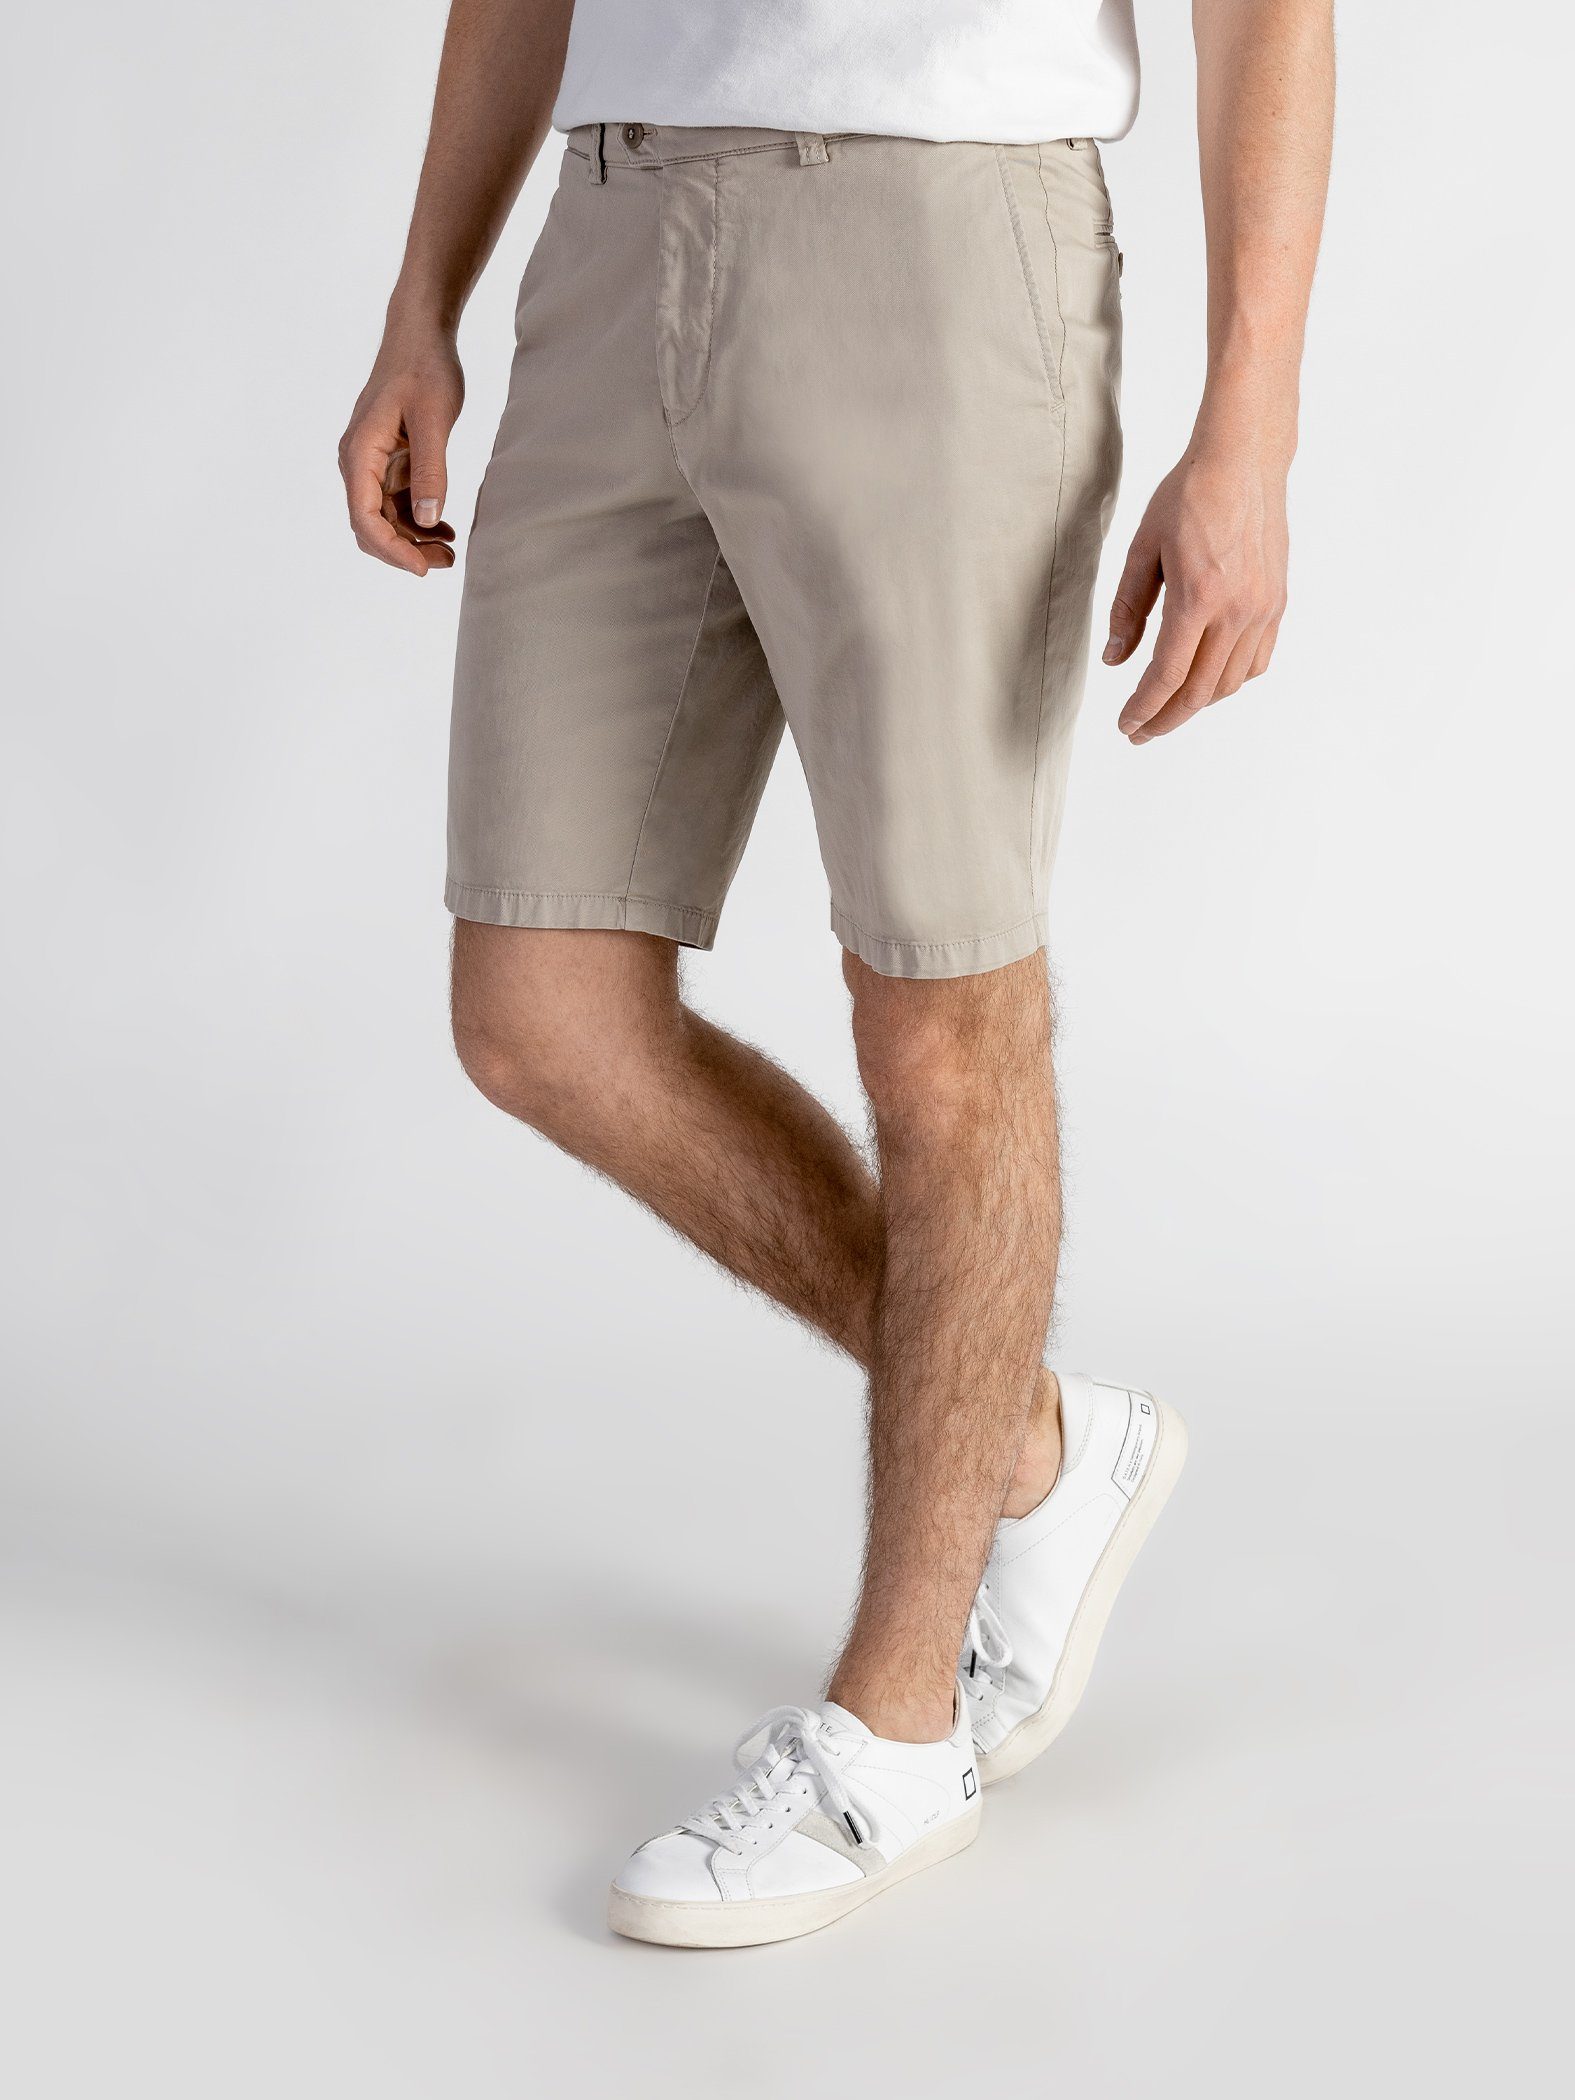 TwoMates Shorts Bund, elastischem sandbeige Shorts GOTS-zertifiziert mit Farbauswahl,